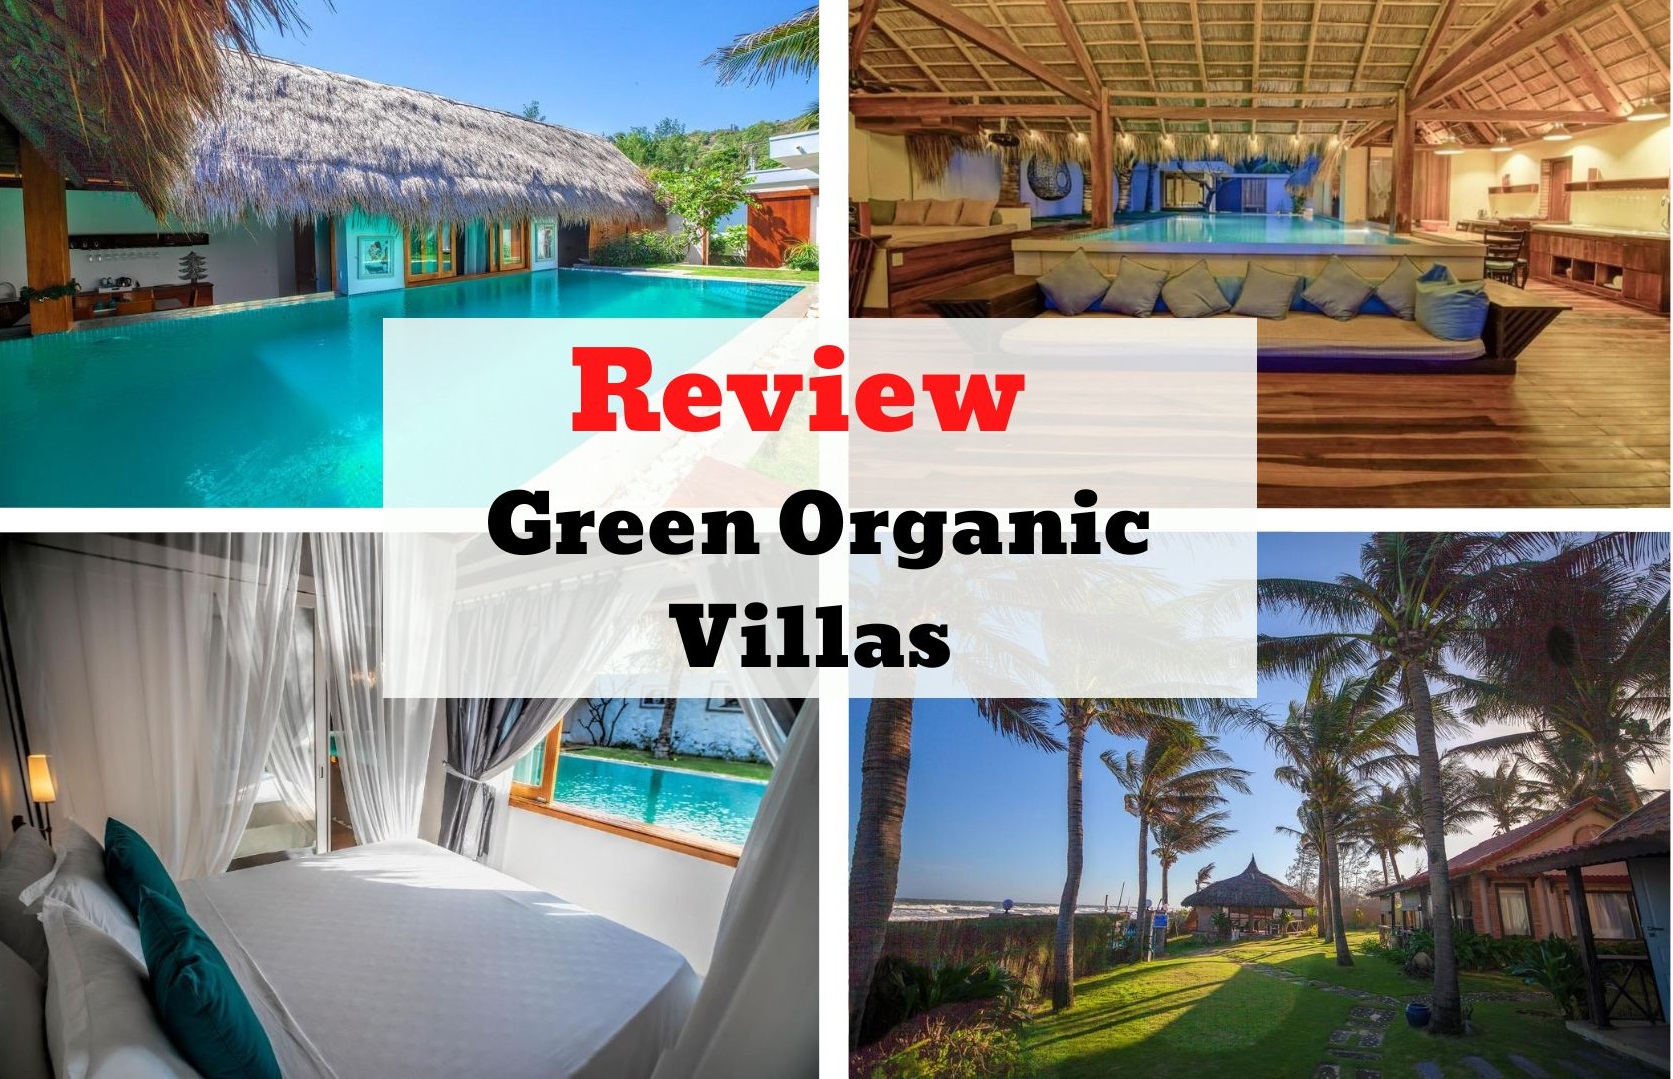 Review Green Organic Villas - Mẫu thiết kế mang phong cách Việt dân dã